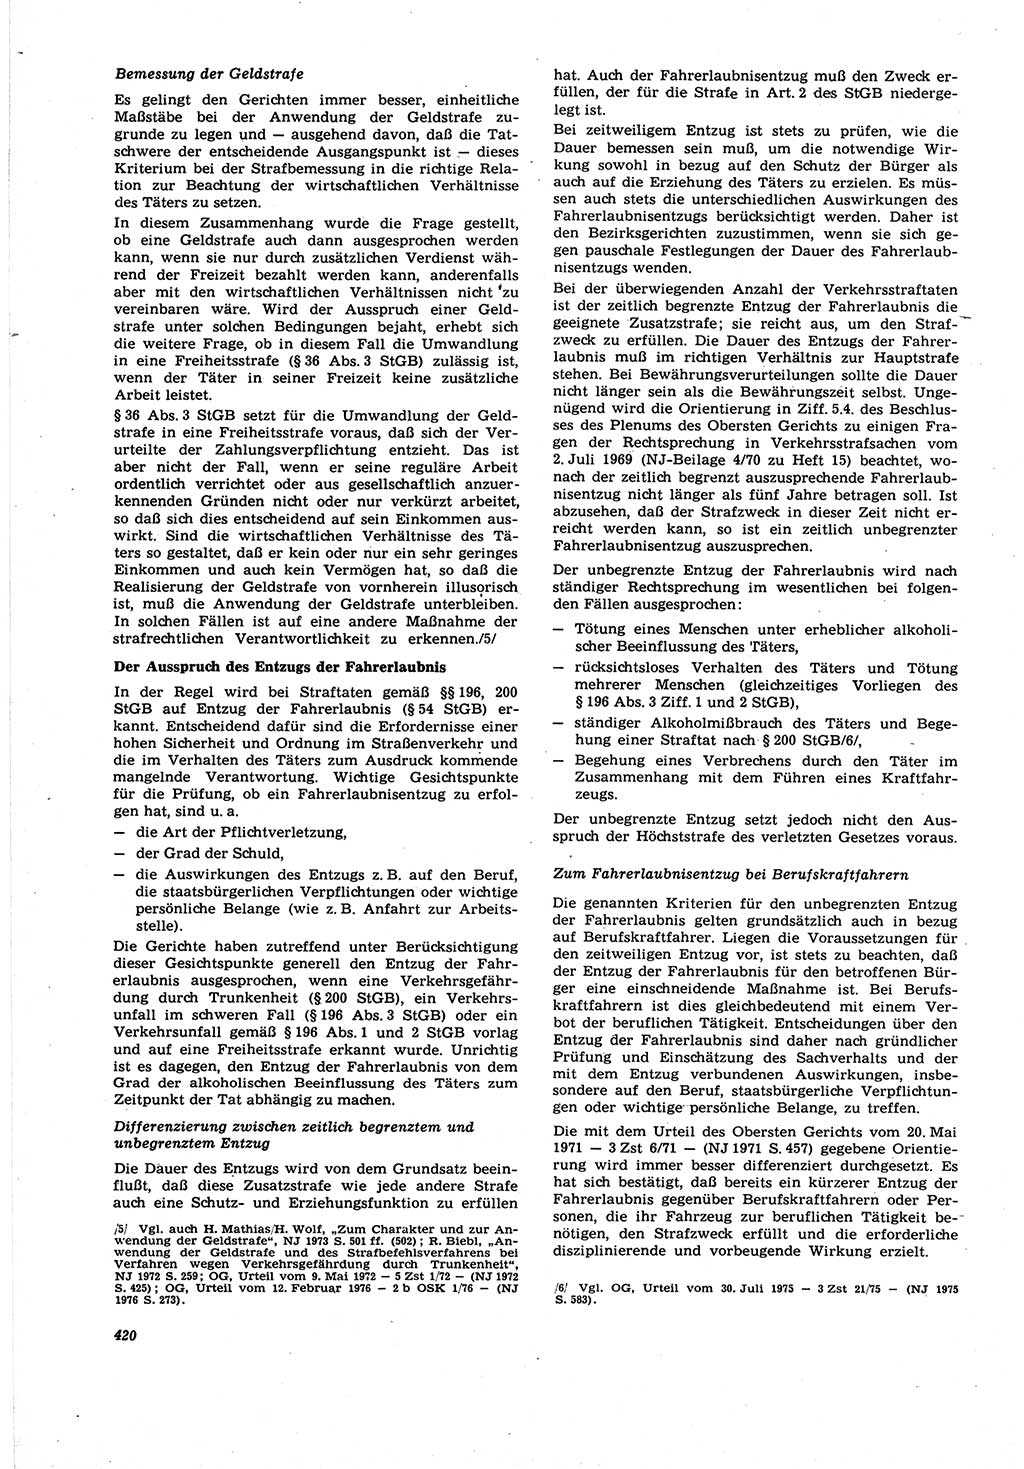 Neue Justiz (NJ), Zeitschrift für Recht und Rechtswissenschaft [Deutsche Demokratische Republik (DDR)], 30. Jahrgang 1976, Seite 420 (NJ DDR 1976, S. 420)